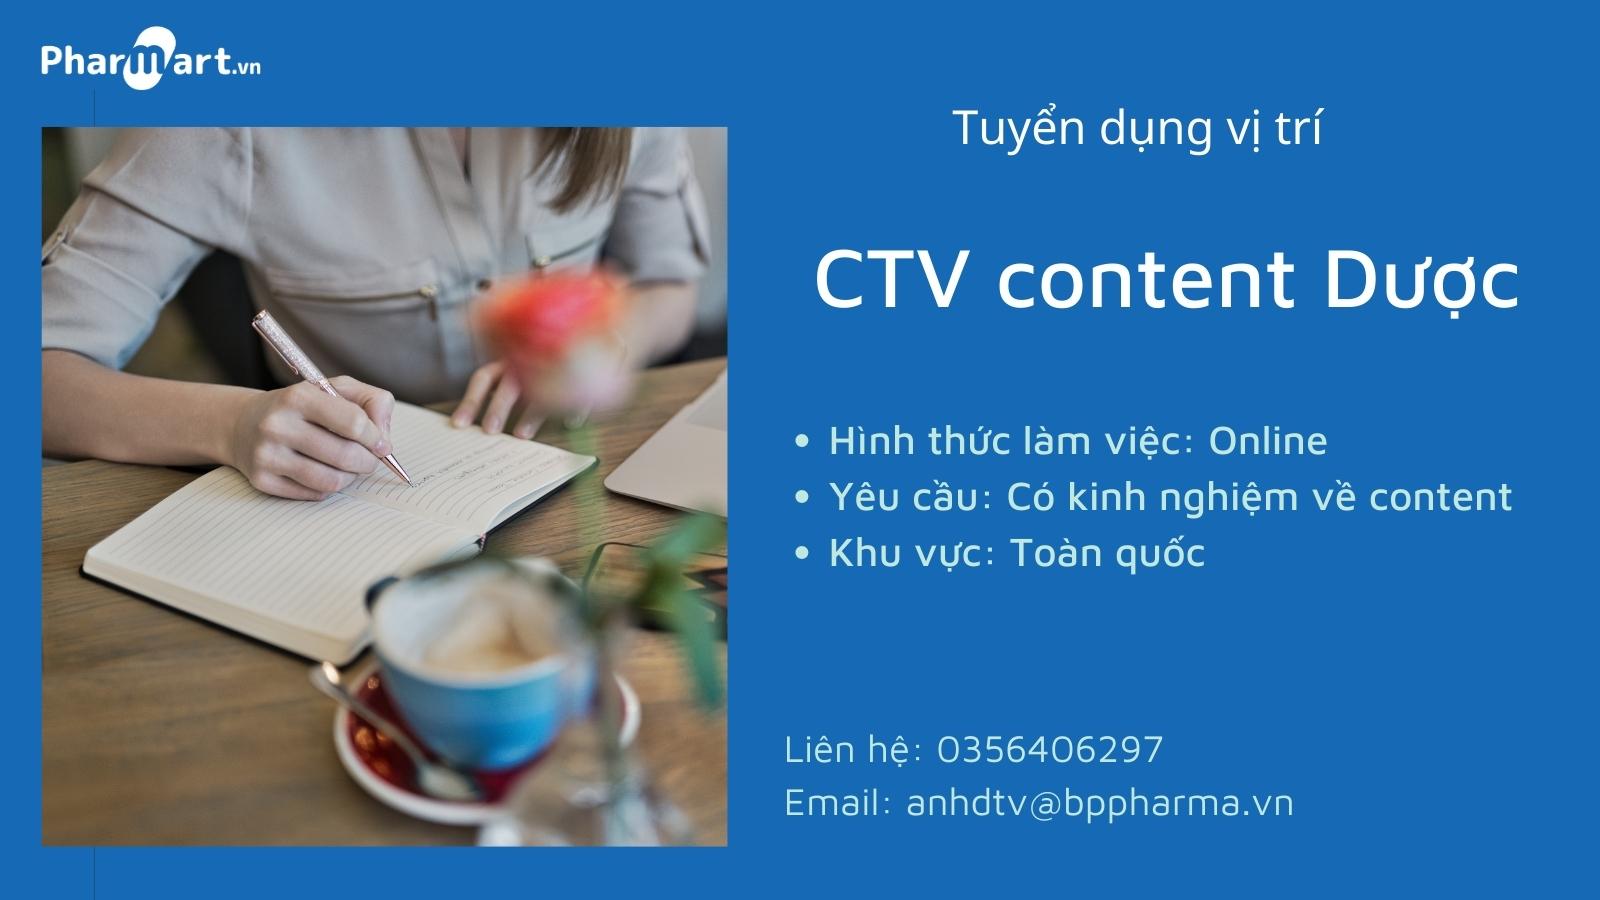 Pharmart.vn tuyển dụng vị trí CTV content Dược